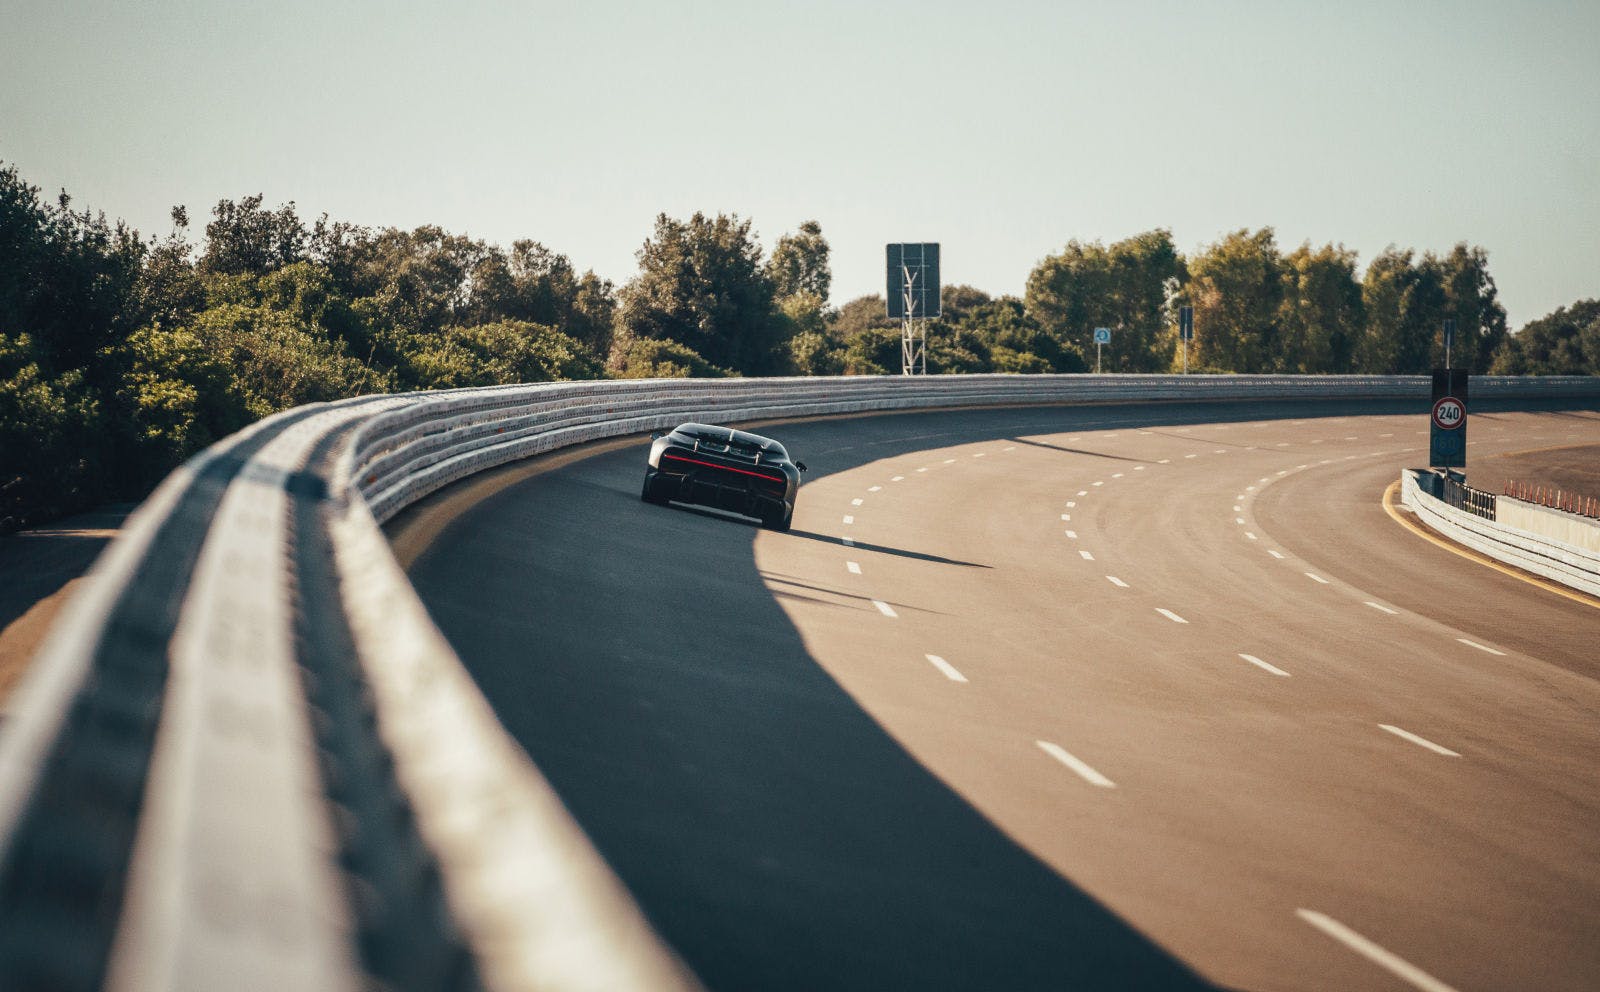 La piste d'essai en forme d'anneau de Nardò, située dans les Pouilles en Italie, est considérée comme le circuit automobile le plus rapide au monde.